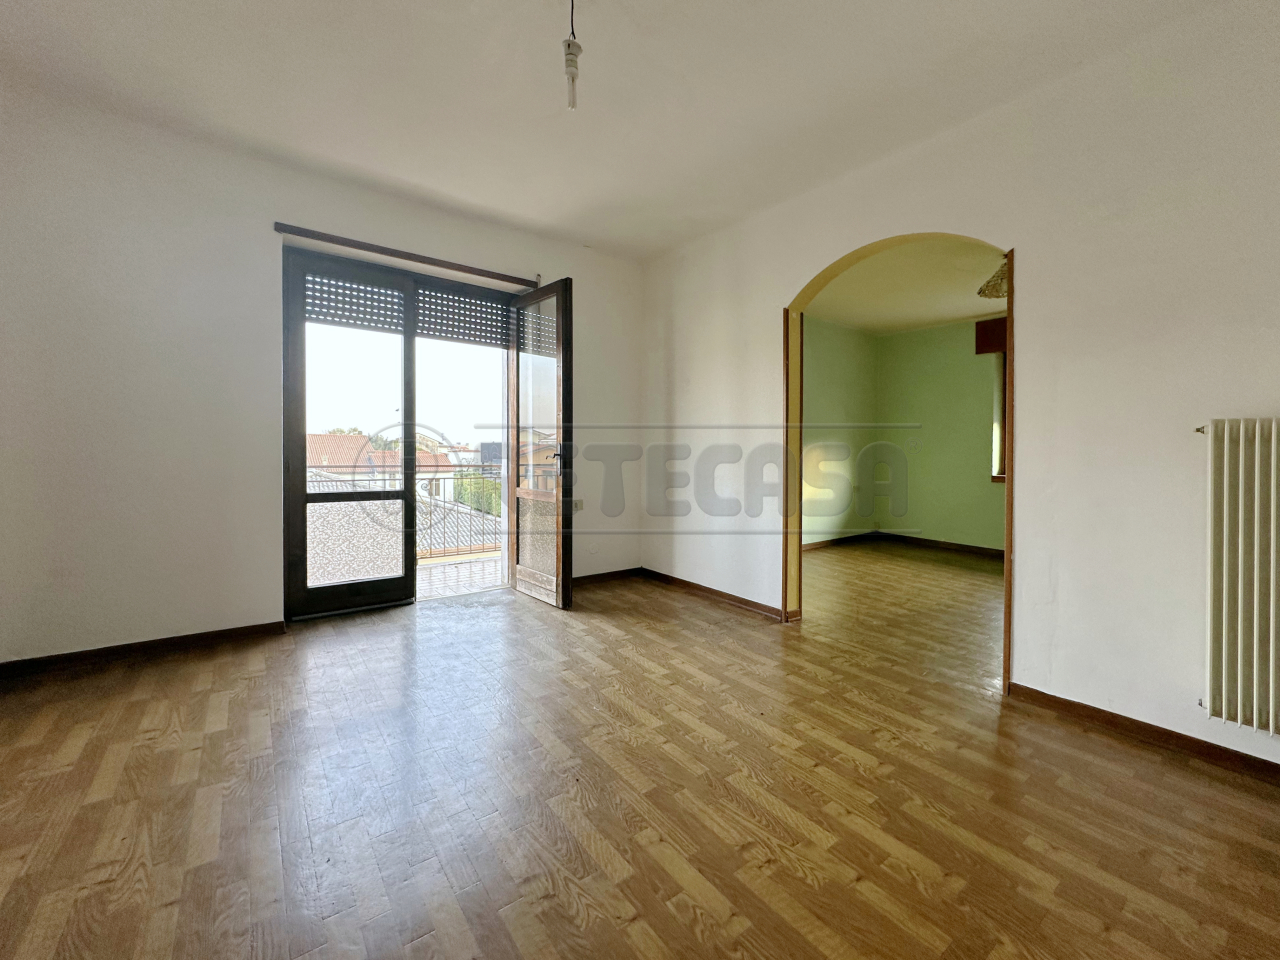 Appartamento in vendita a Schio, 4 locali, prezzo € 75.000 | PortaleAgenzieImmobiliari.it